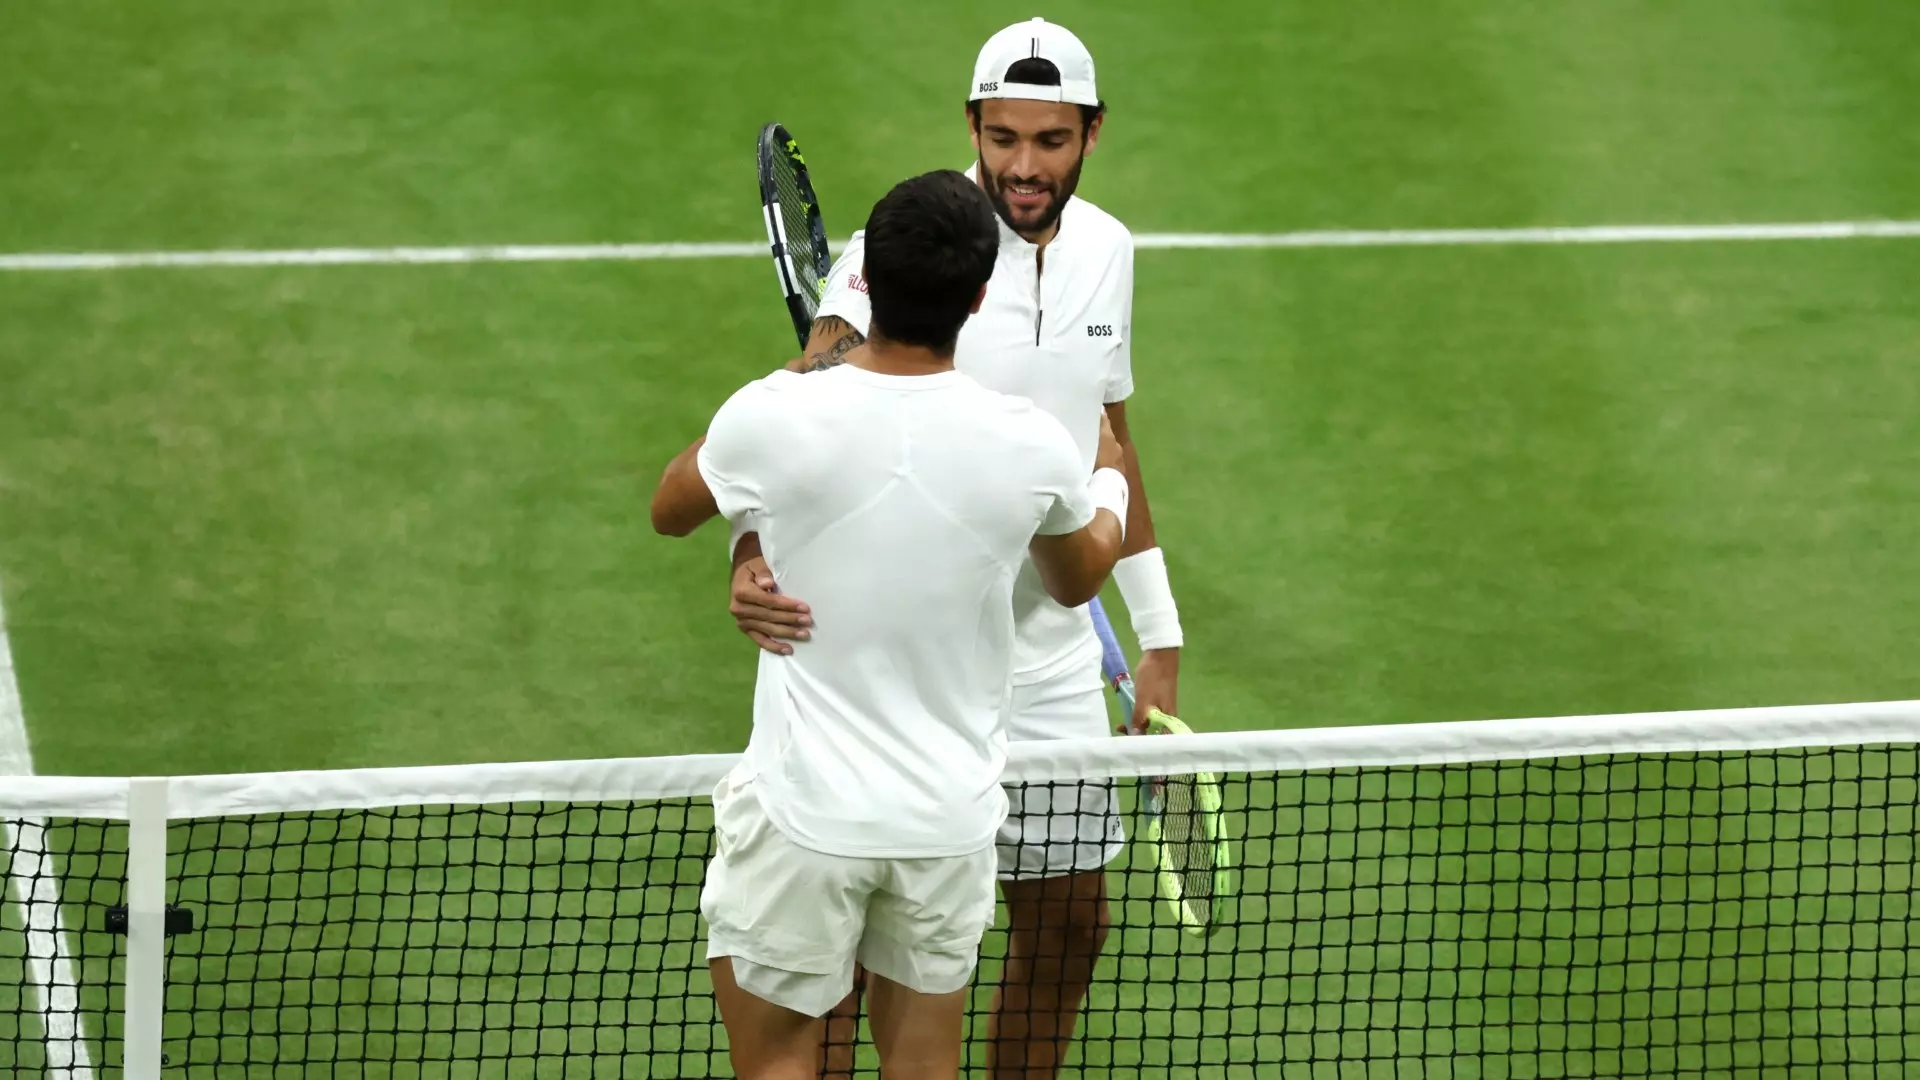 Matteo Berrettini fuori da Wimbledon: “Ho ritrovato la gioia, bene così”